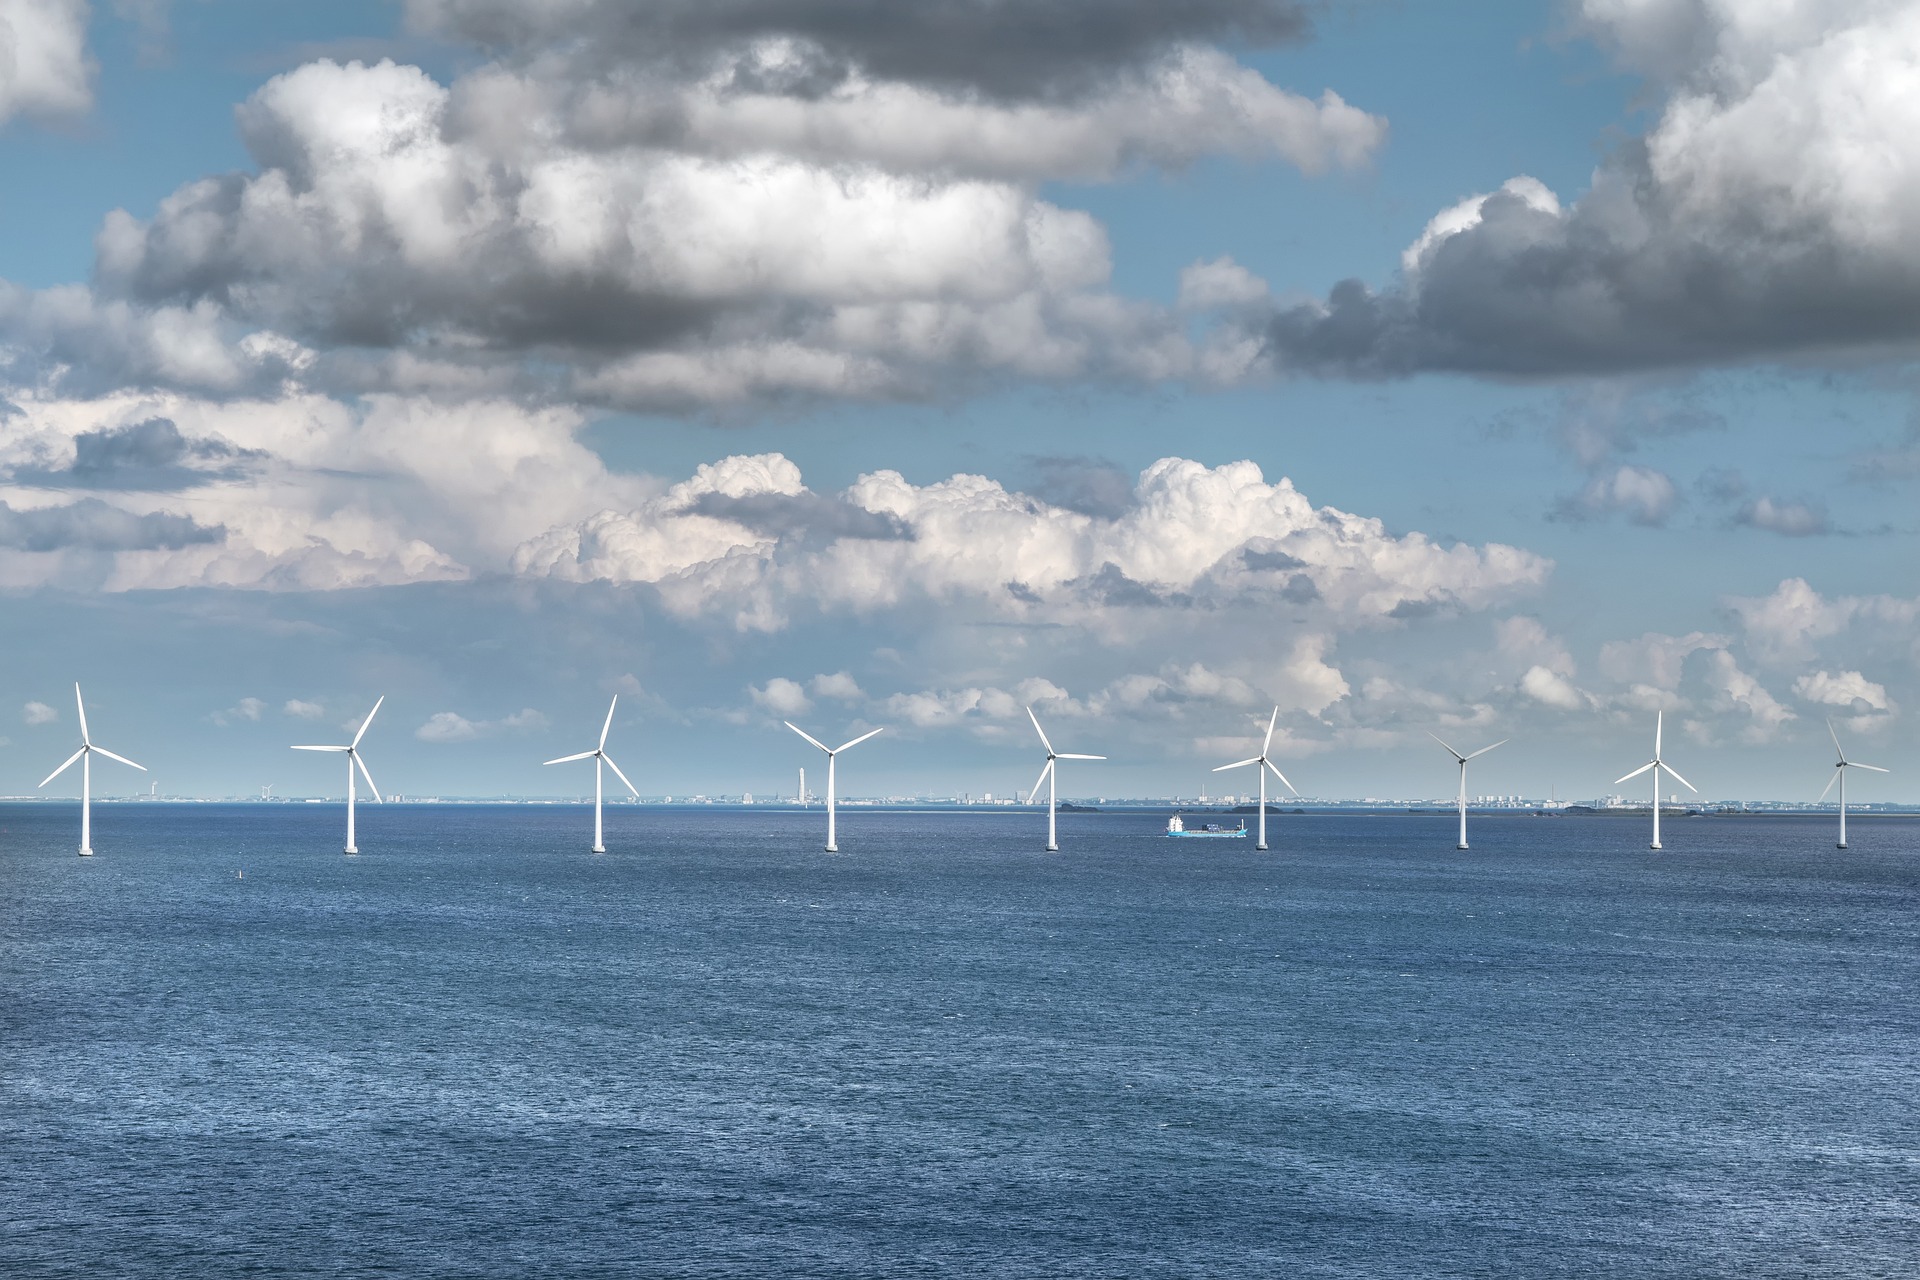 Aftenbladet vindt dat de overheid offshore wind moet heroverwegen